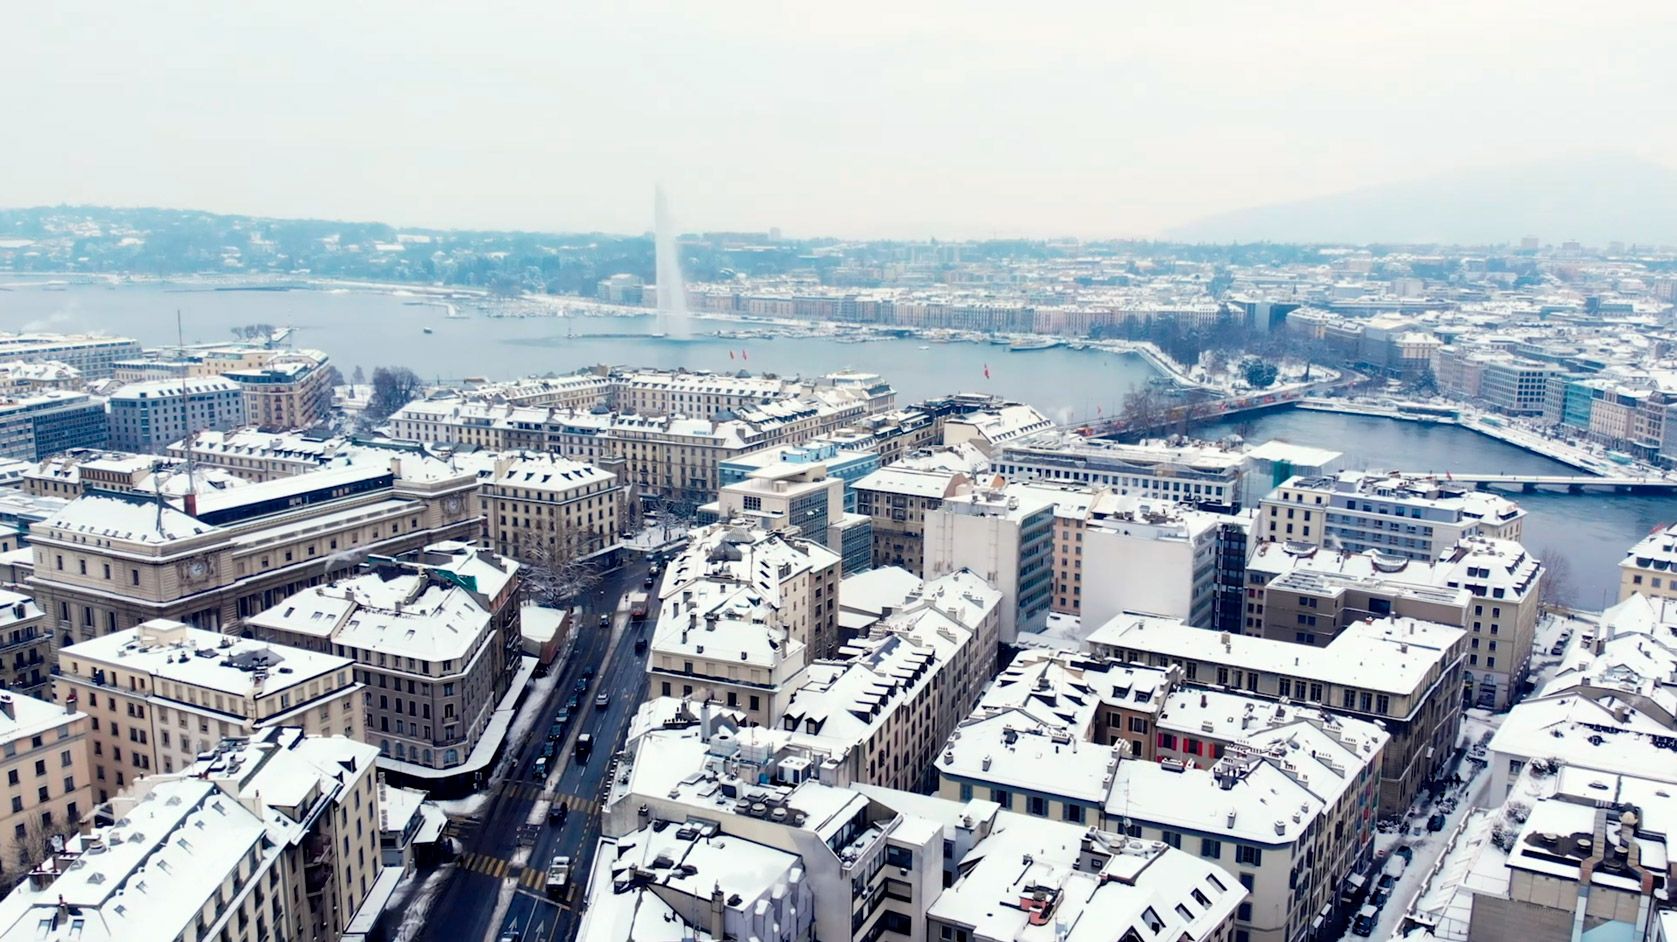 Ad: Geneva in Winter